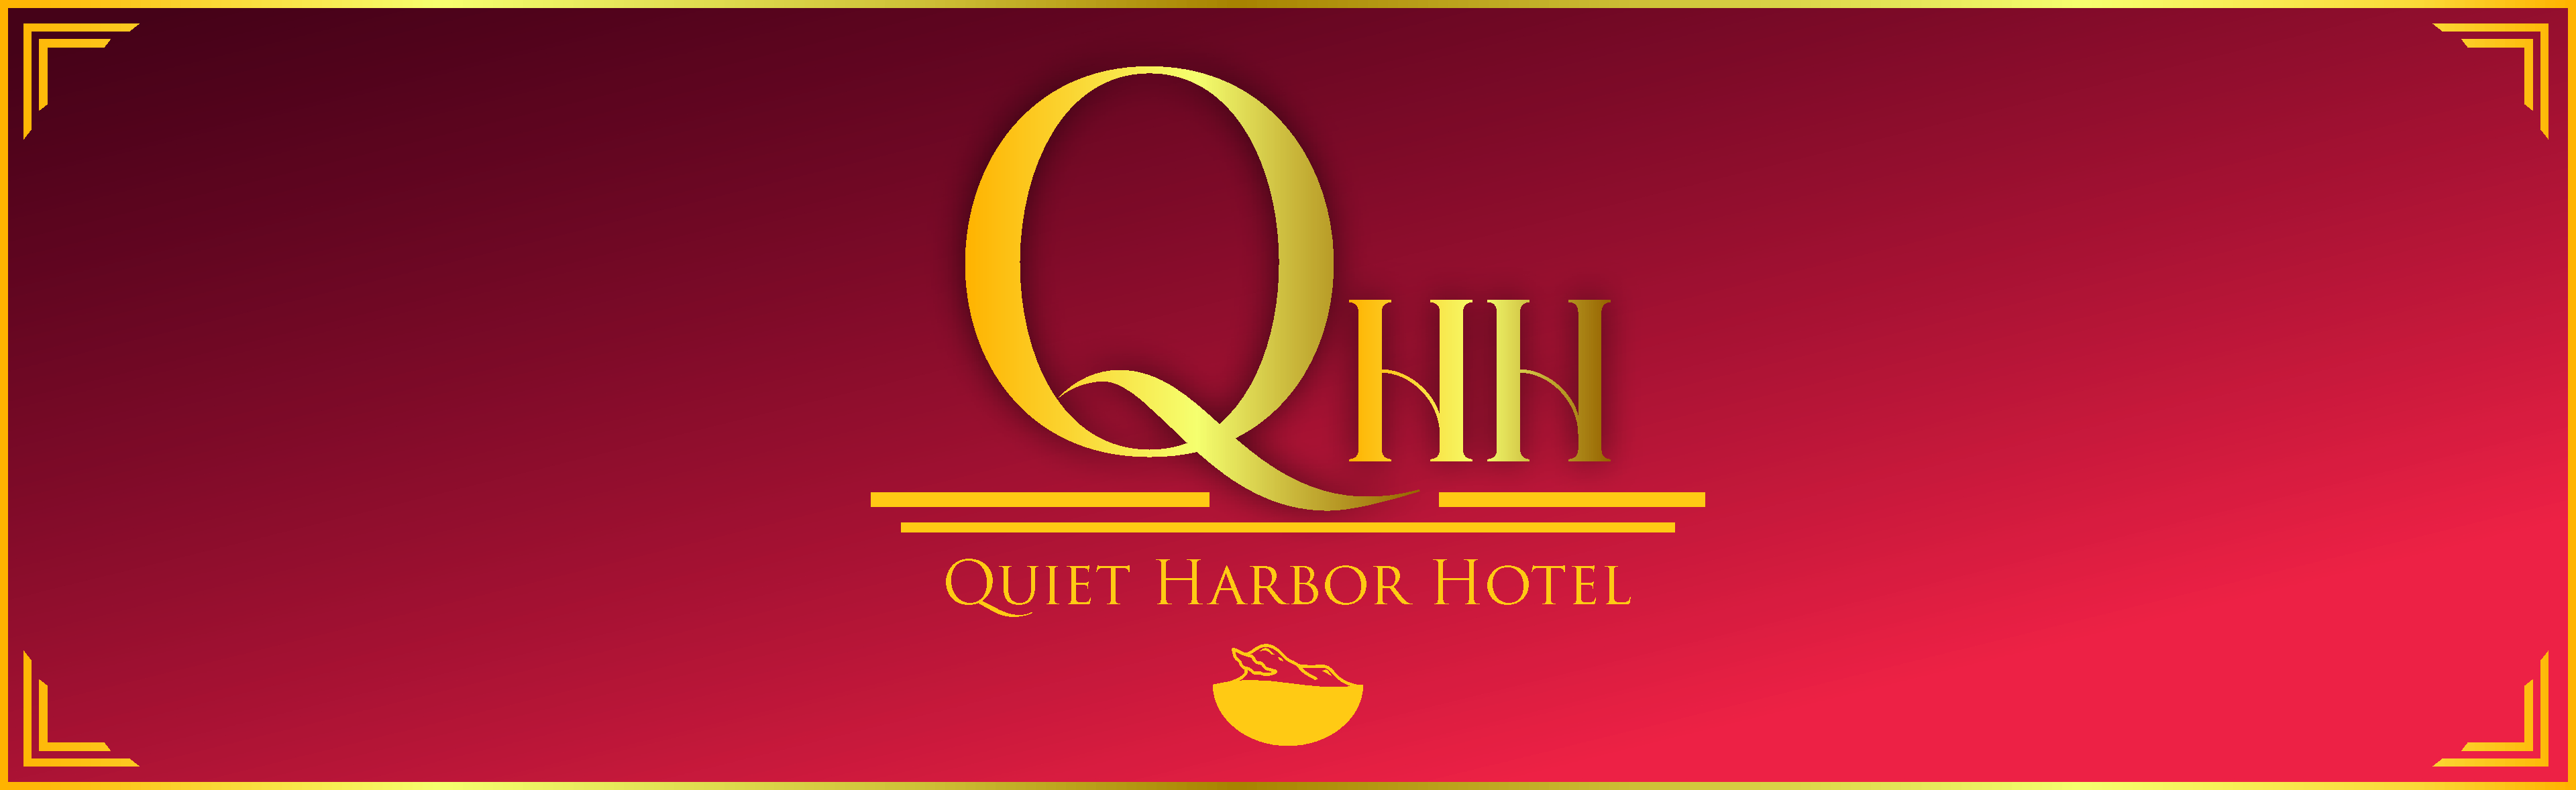 Quiet Harbor Hotel